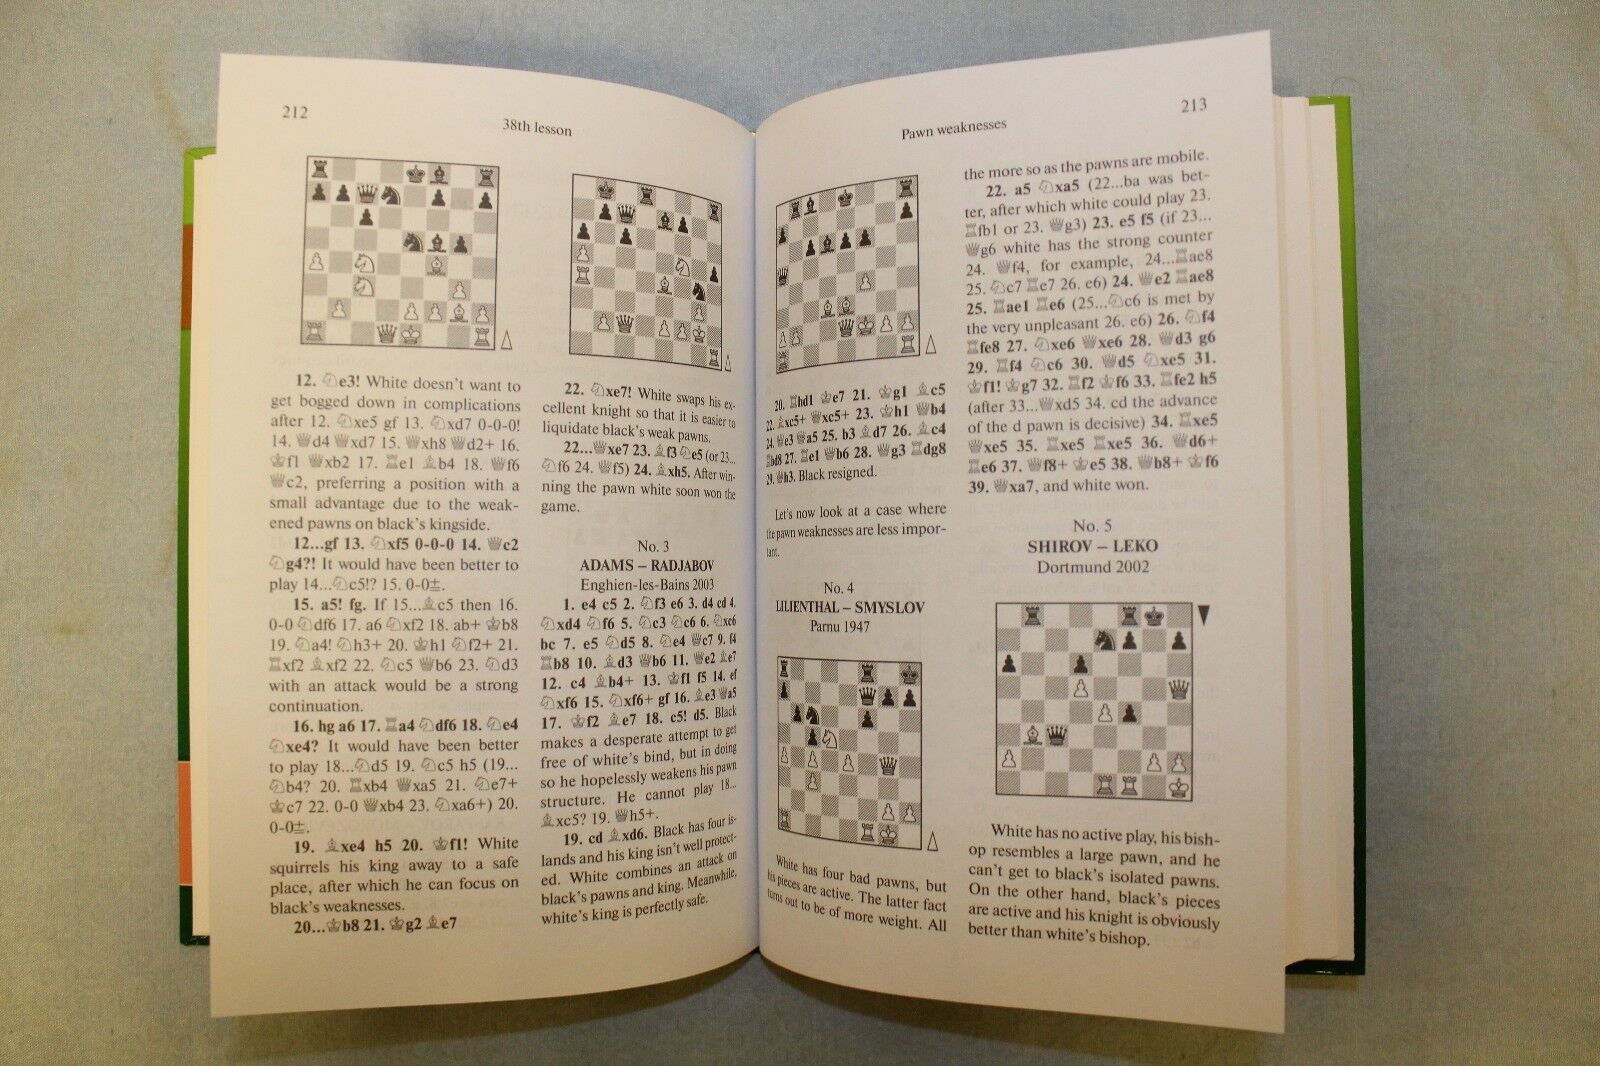 Training Program For Chess Players.1 category. V.Golenishchev. Editor:  A.Karpov